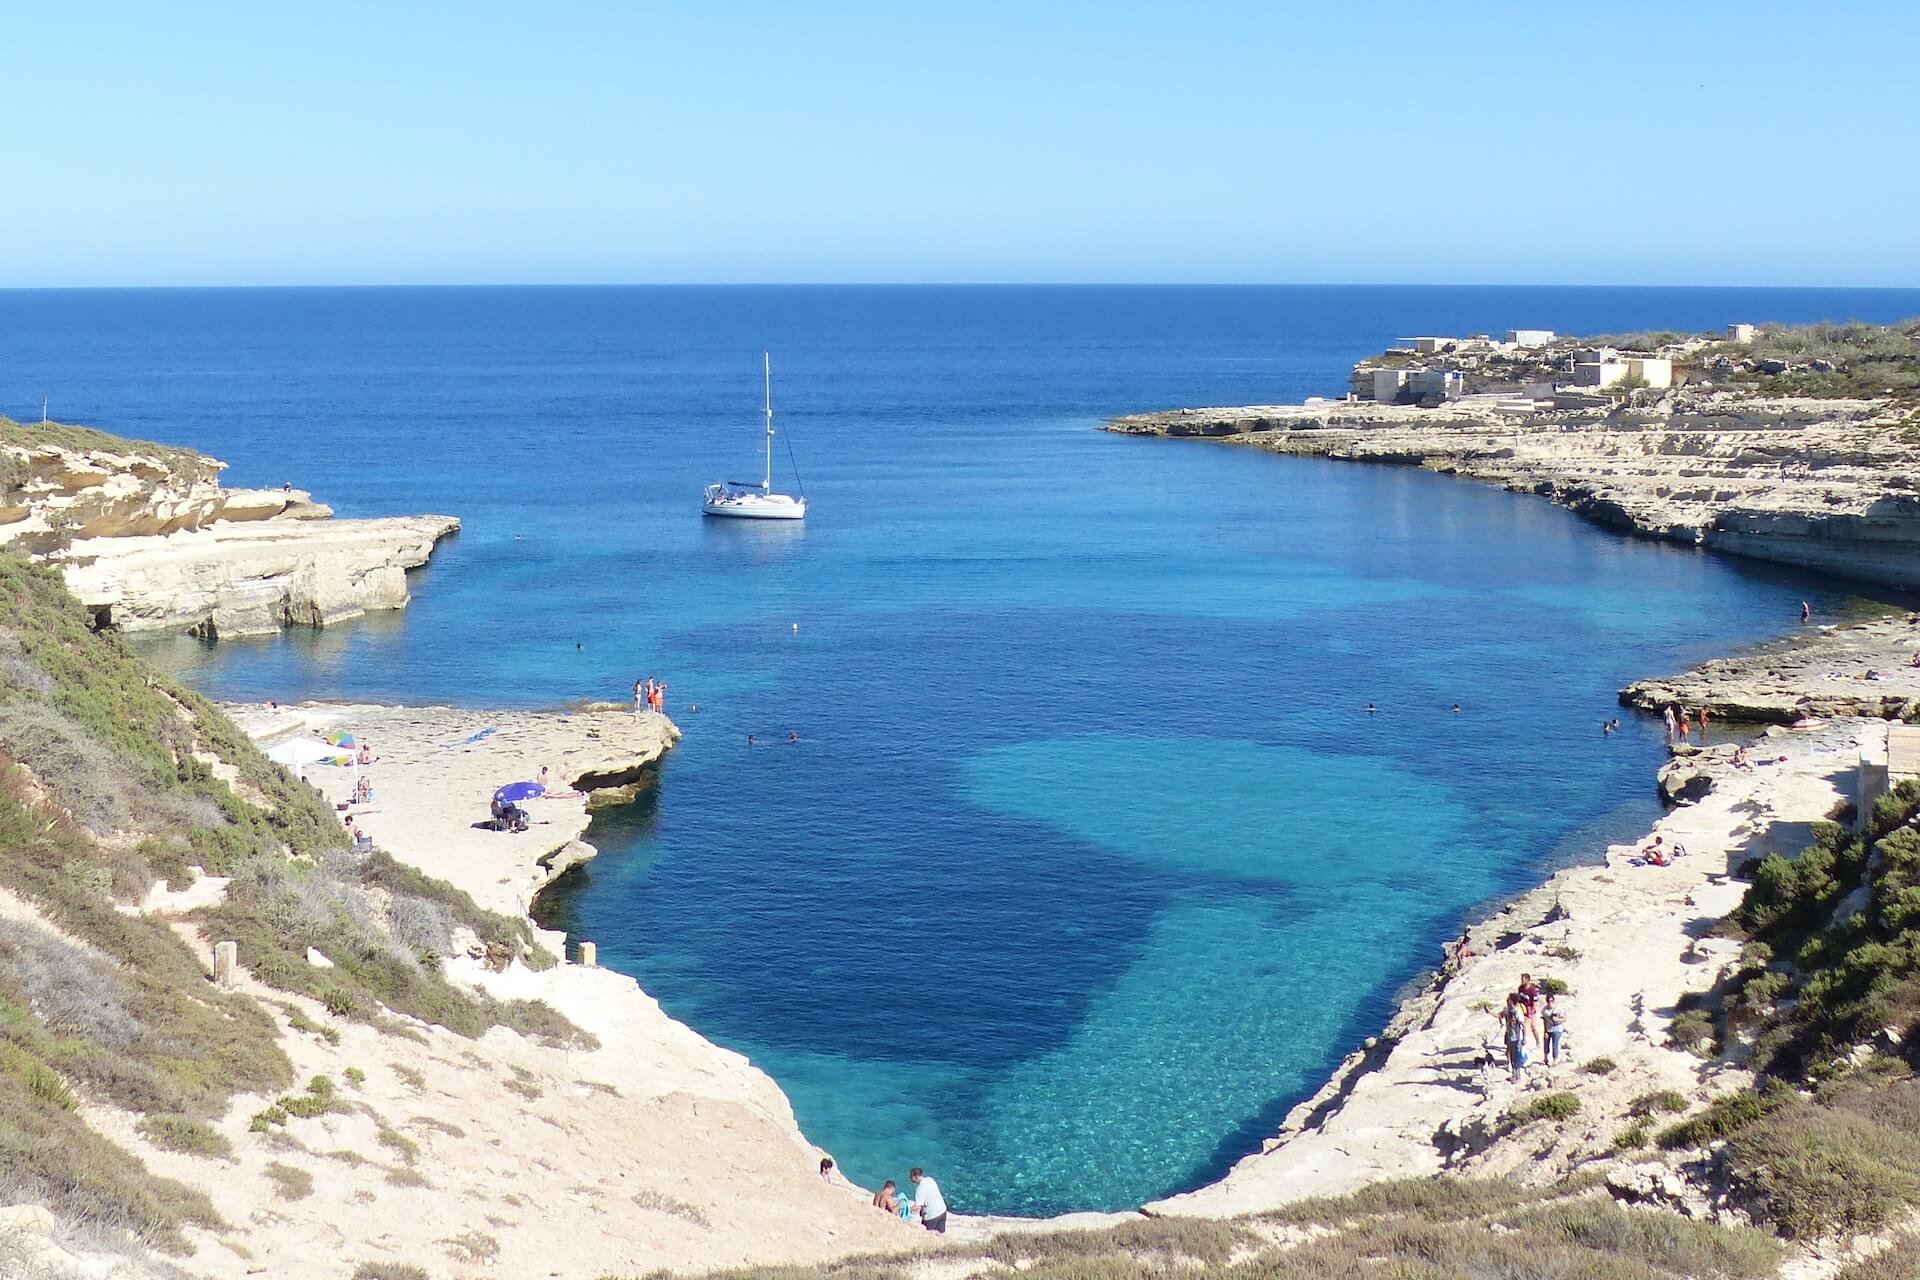 Barco en la bahía de Kalanka (Malta)